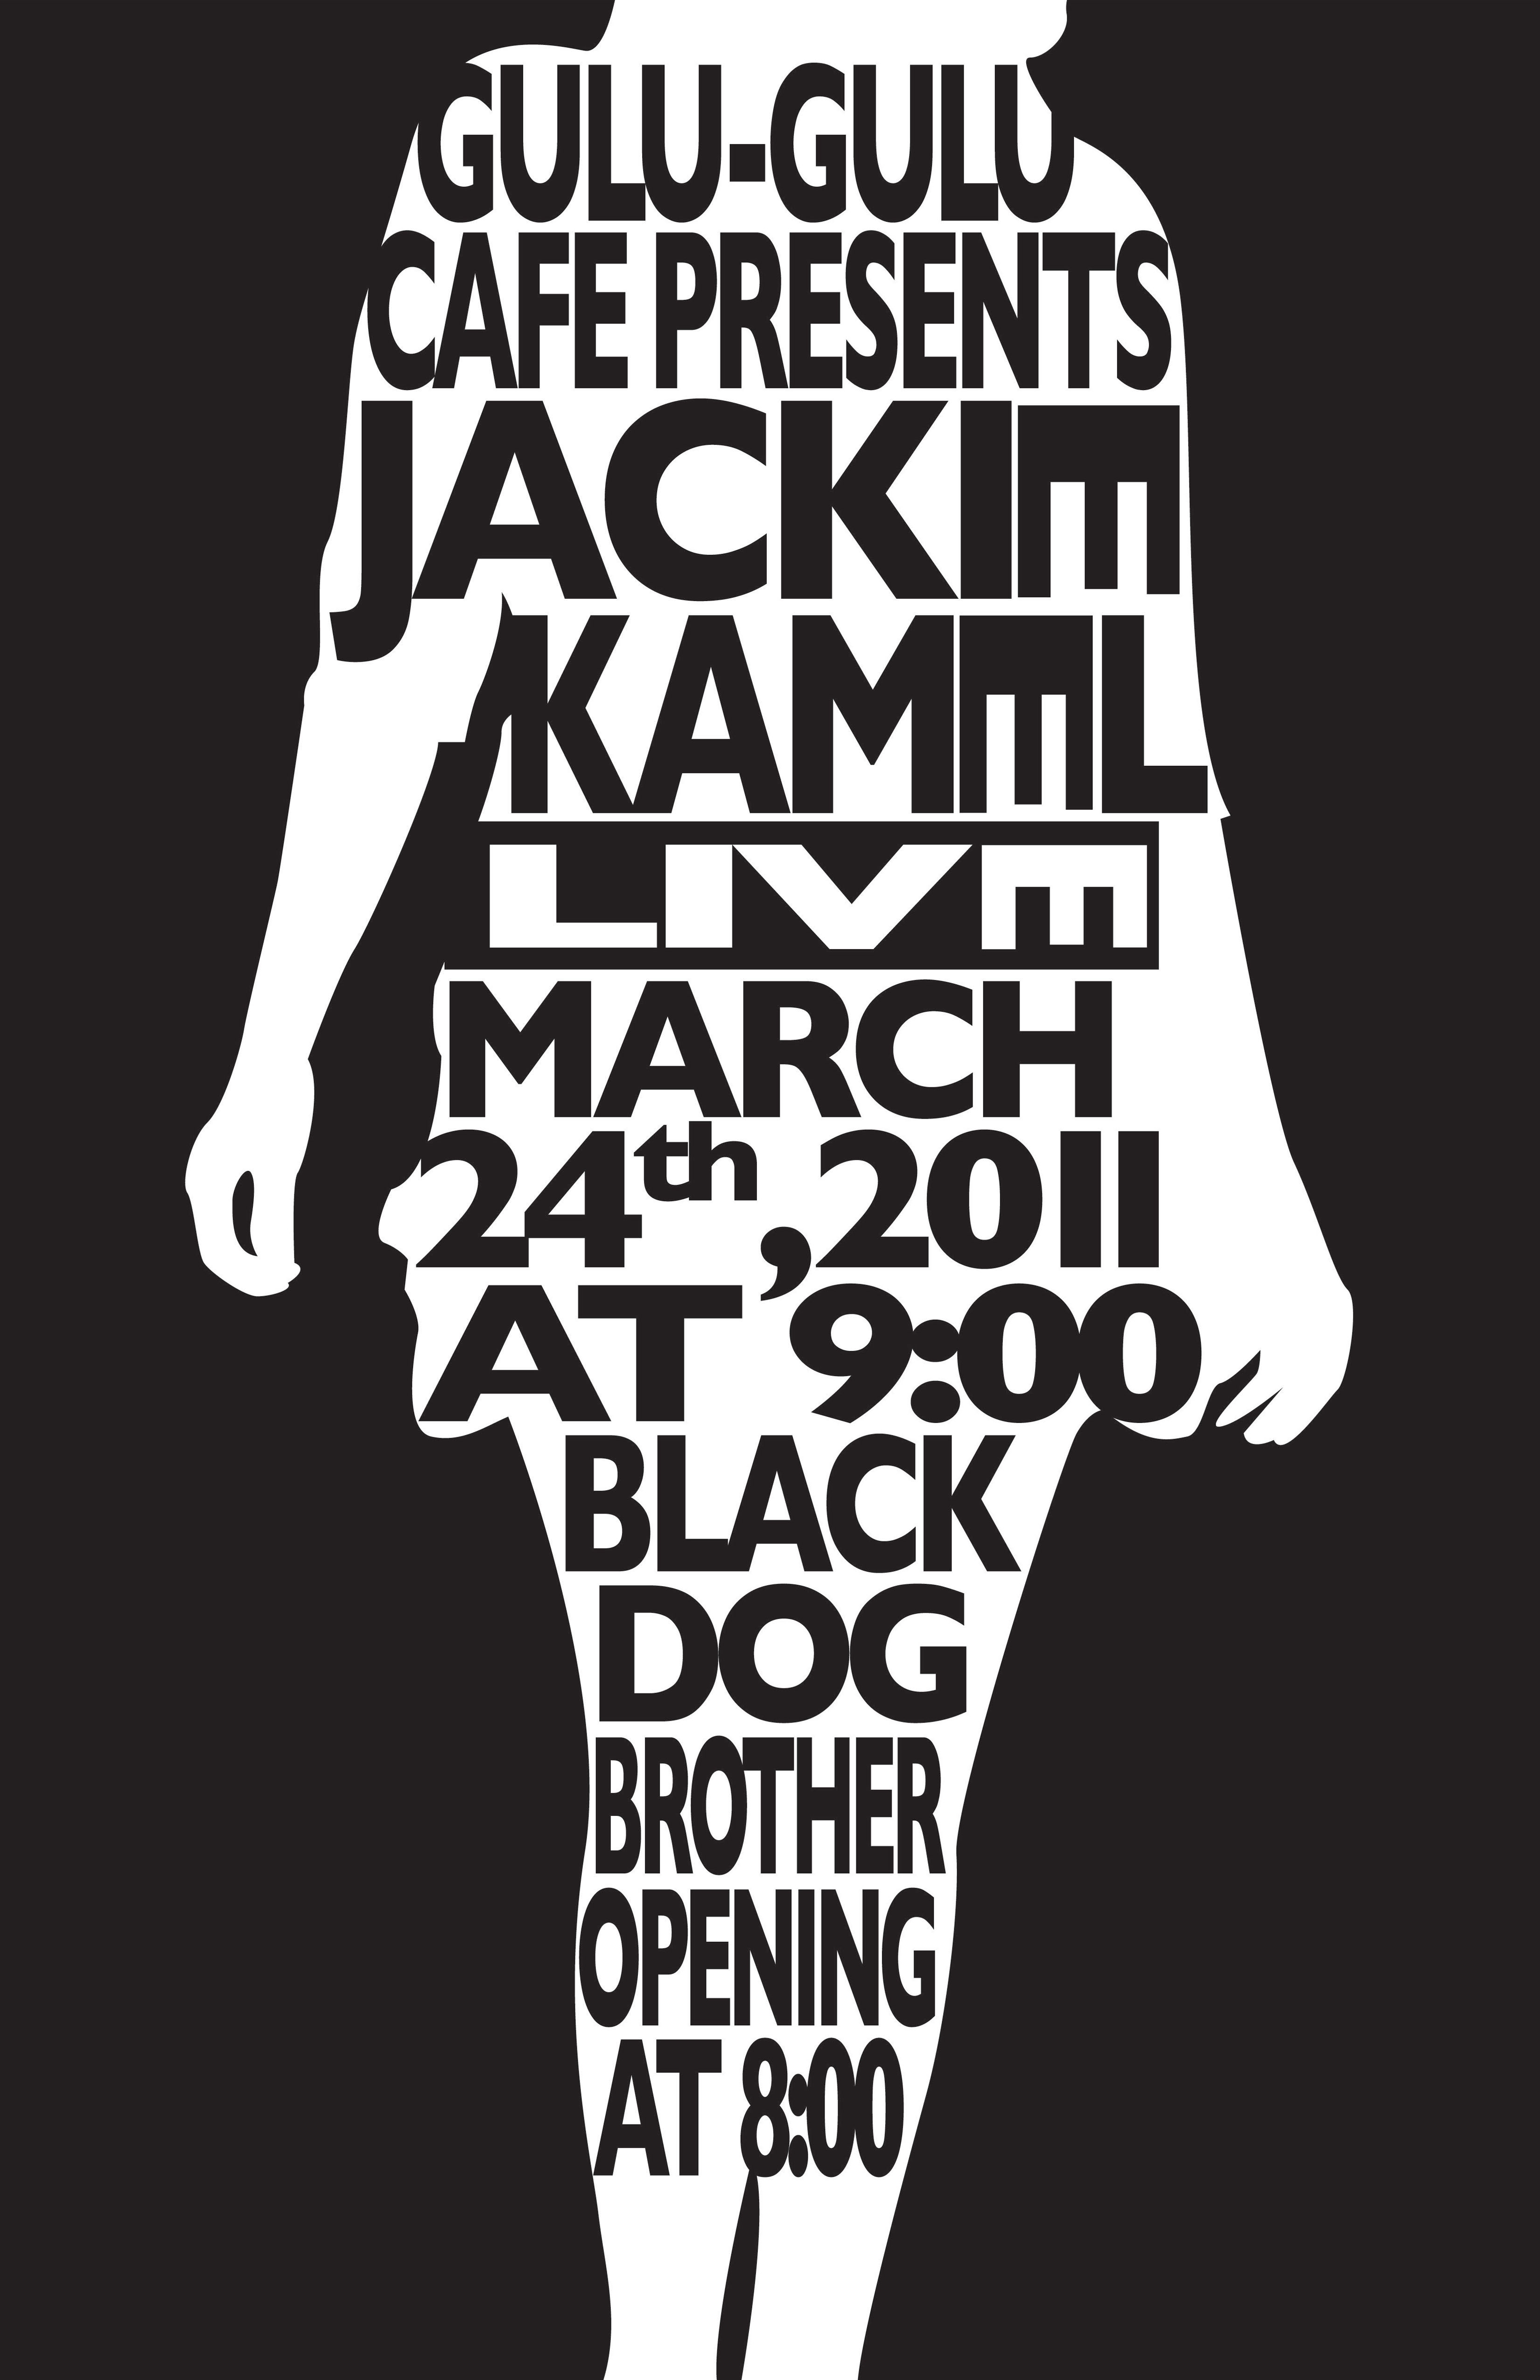 Jackie Kamel Gig Poster black and white illustration